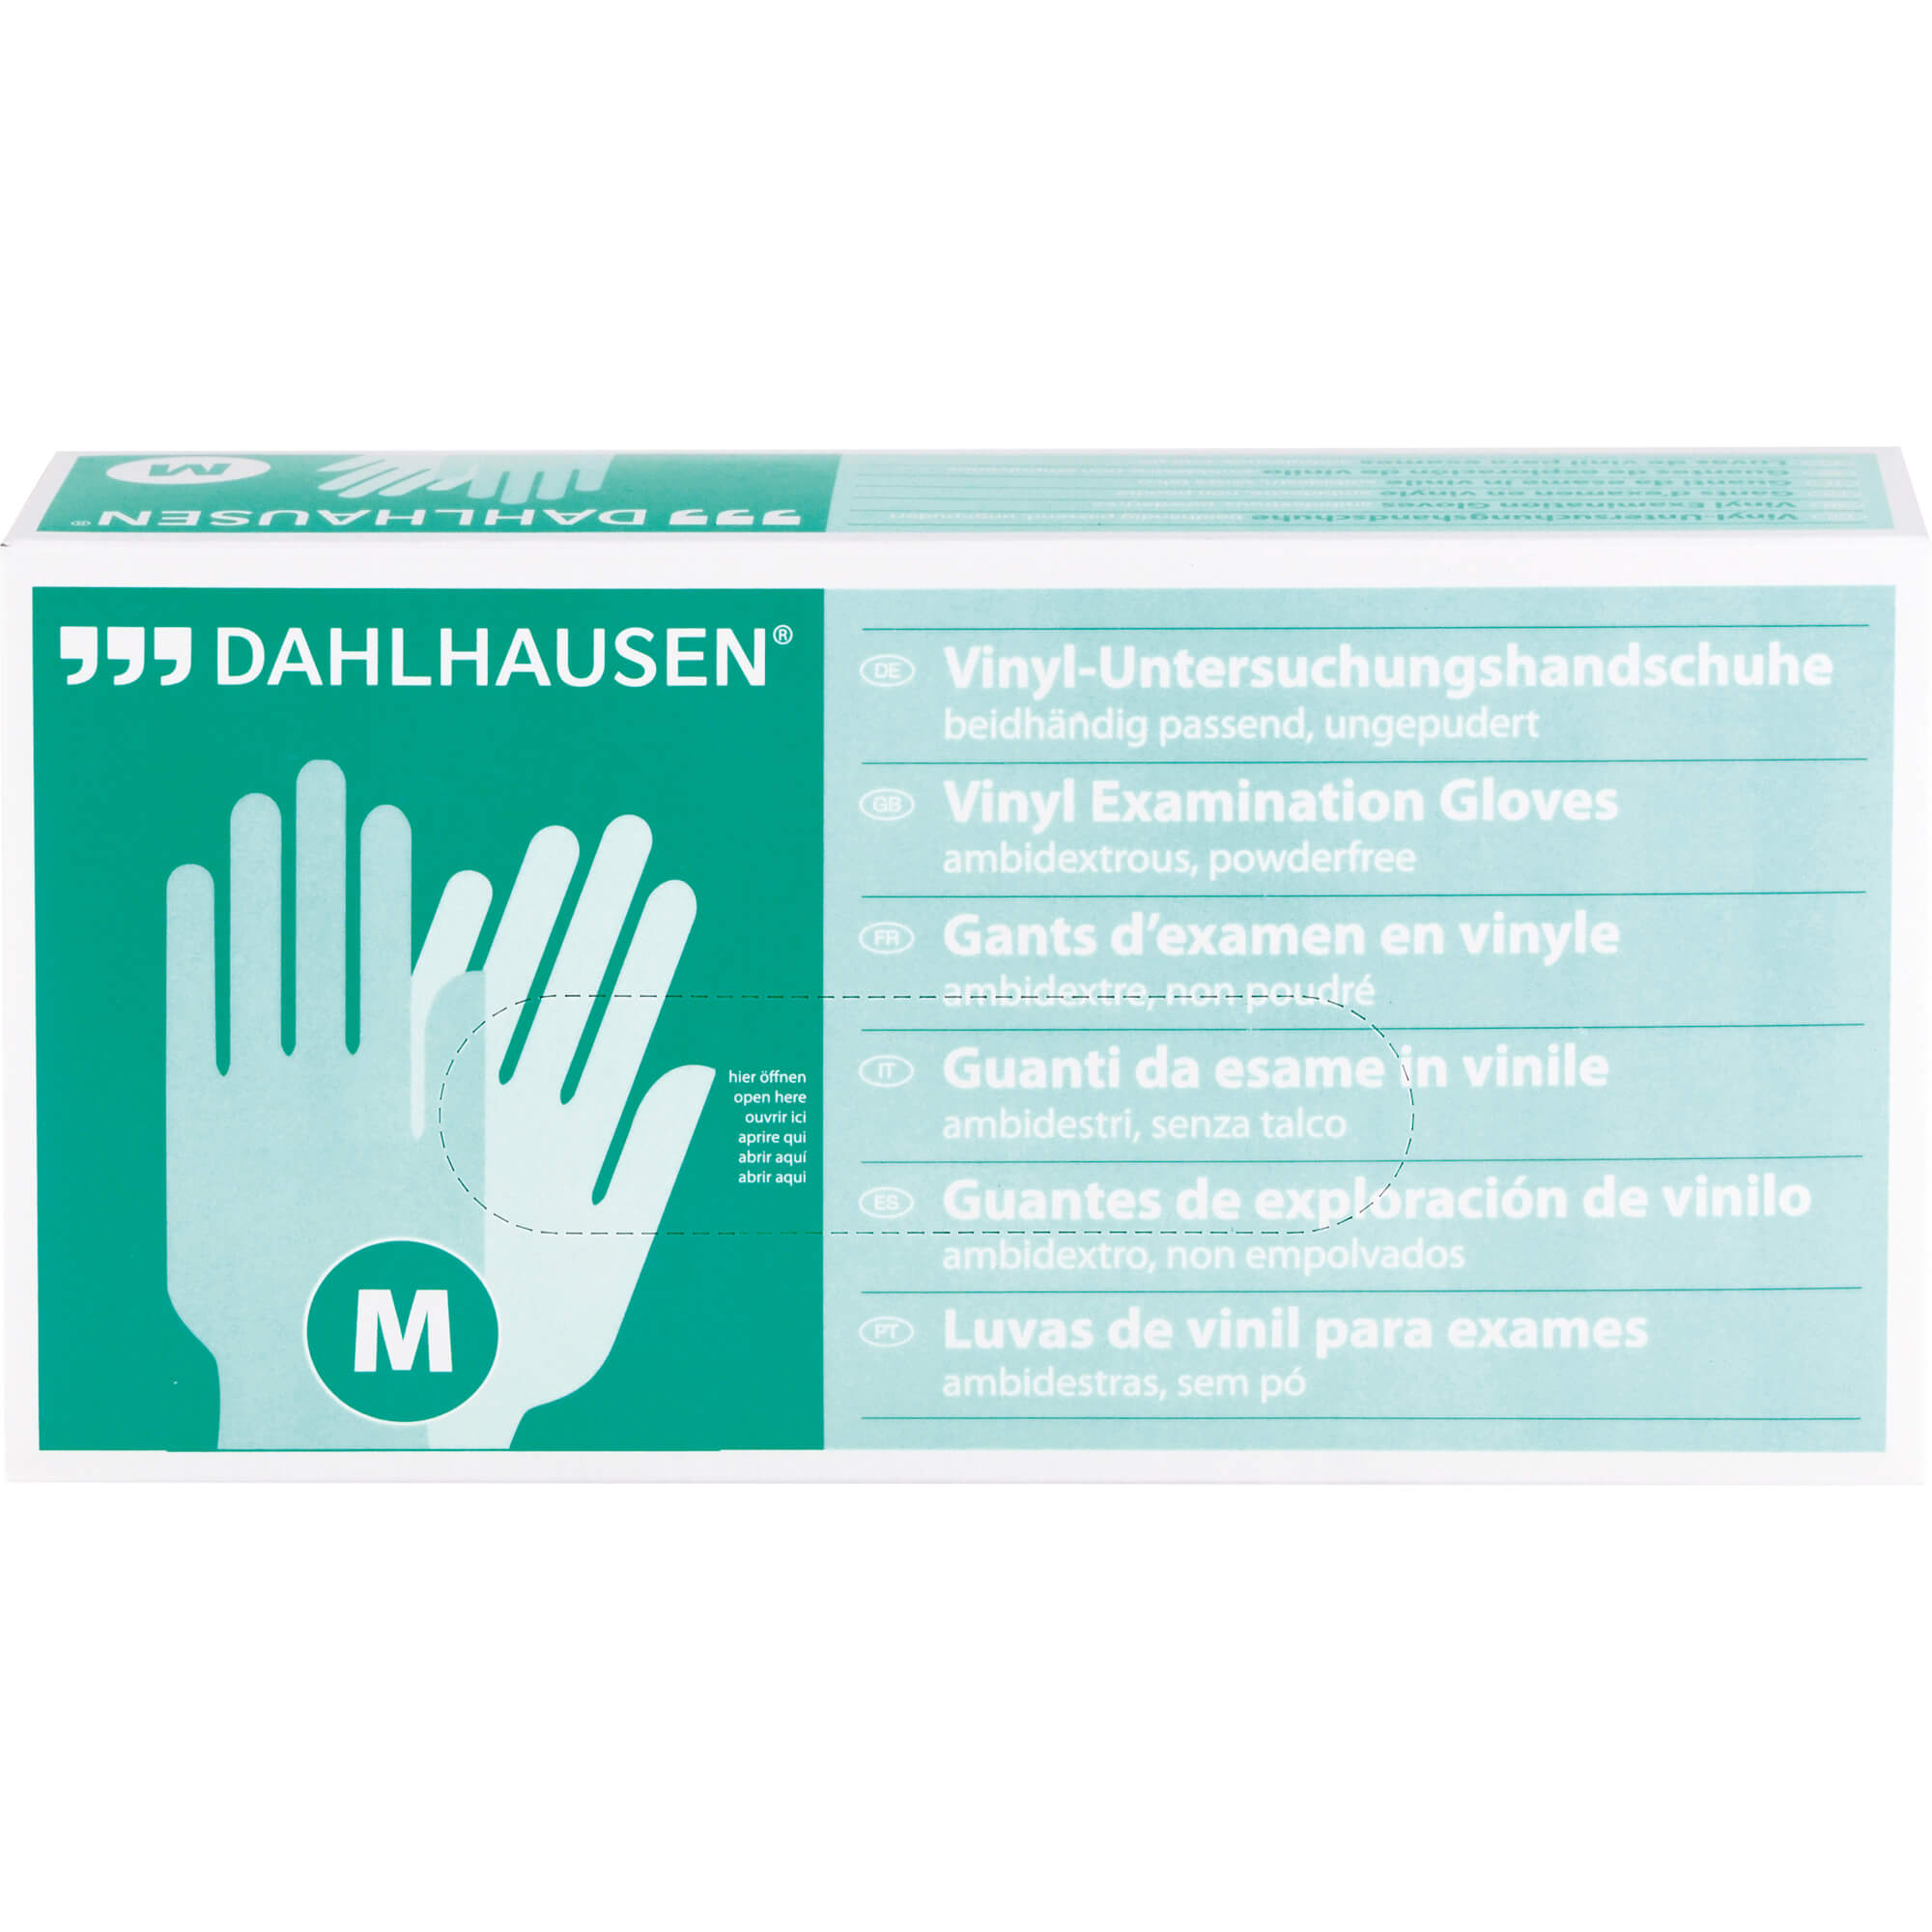 Dahlhausen Vinyl Gloves Size M Powder-free, 100 St Gloves 7485673